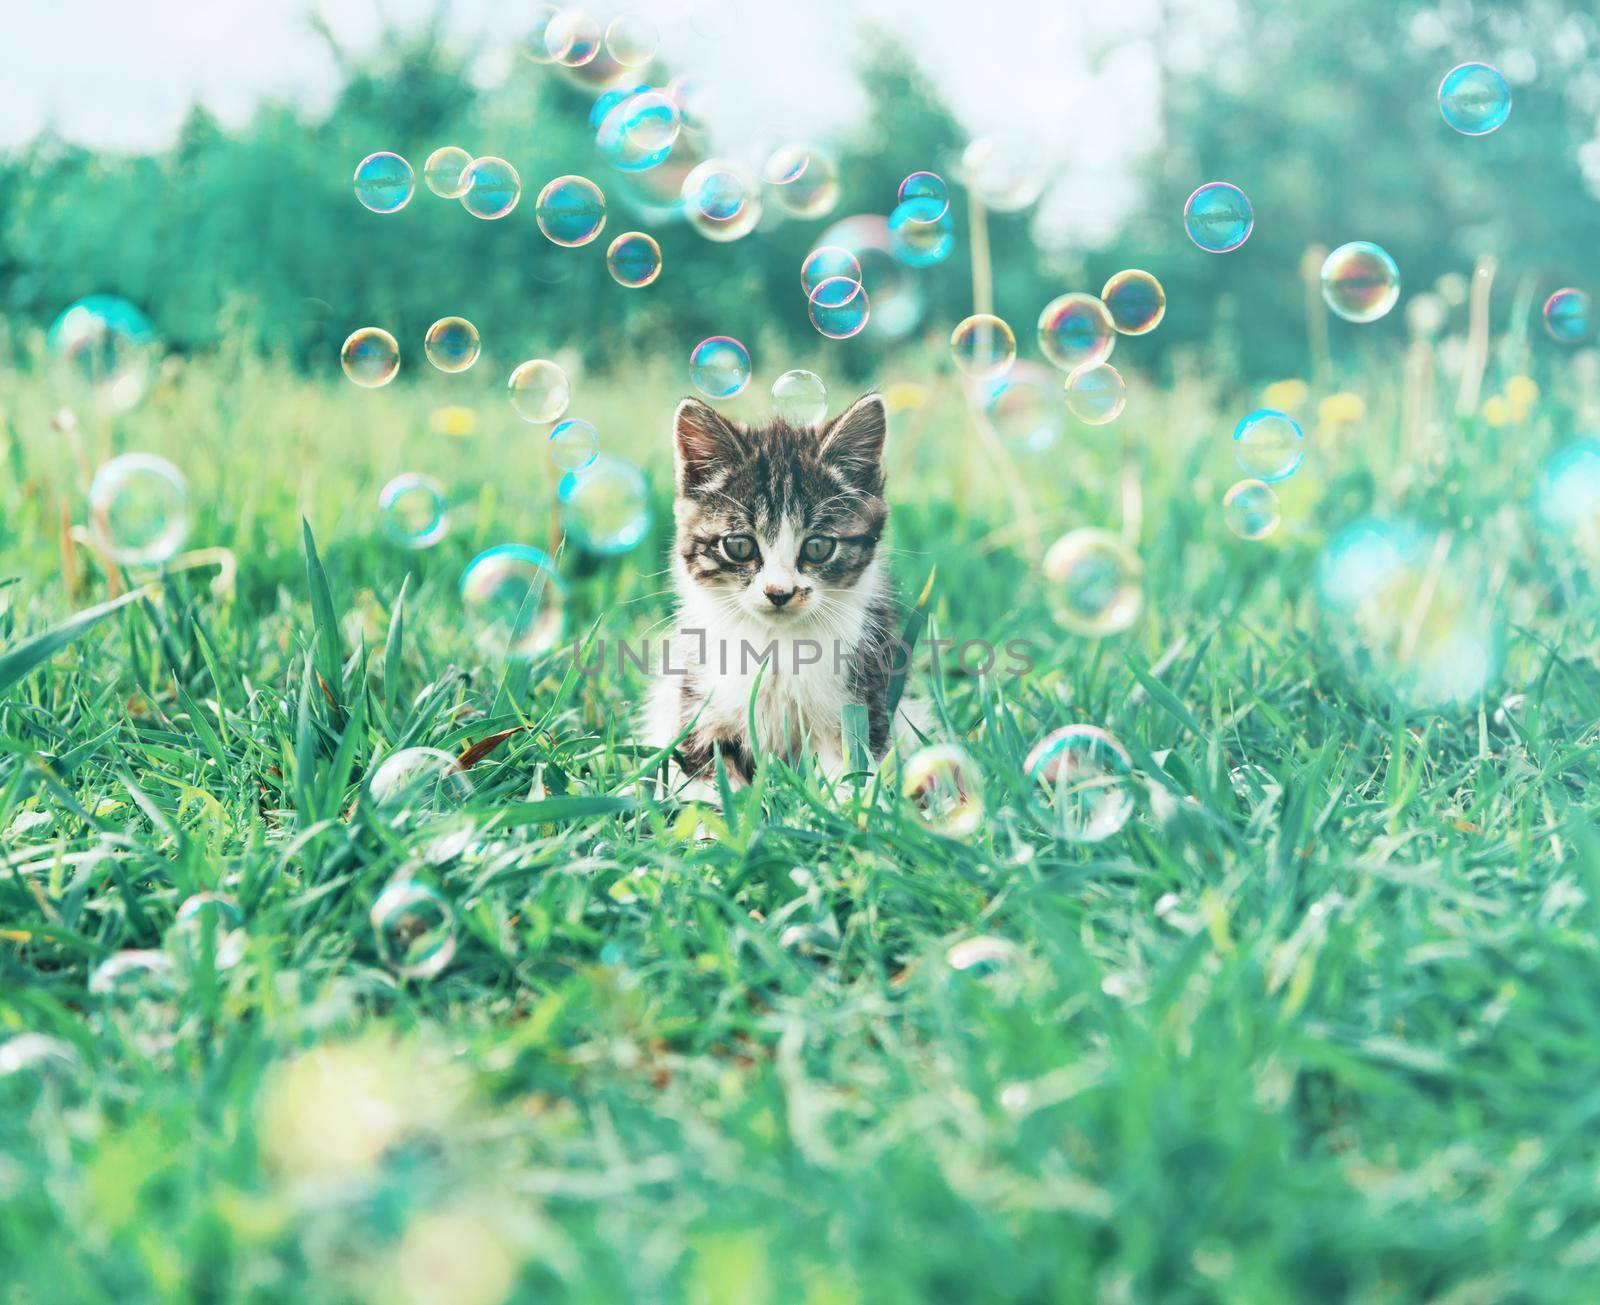 Kitten on summer meadow by alexAleksei